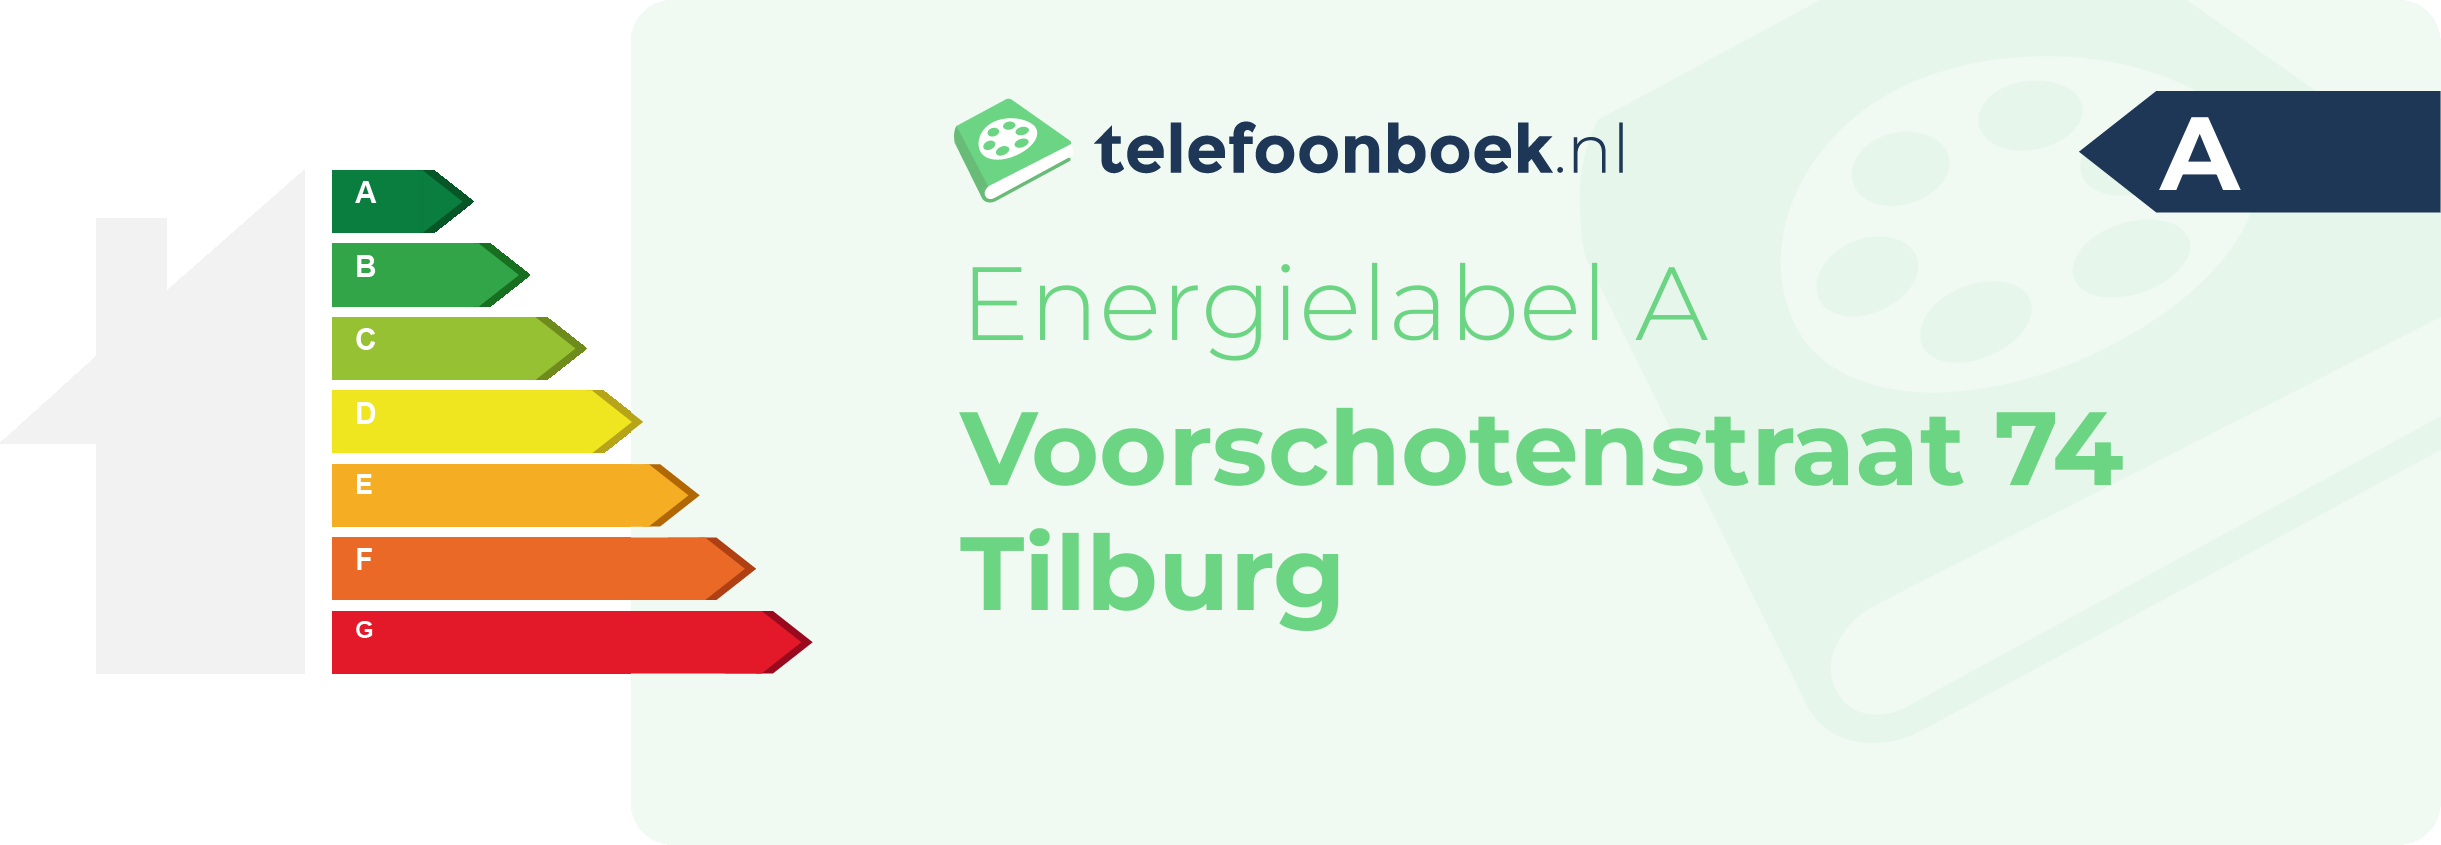 Energielabel Voorschotenstraat 74 Tilburg